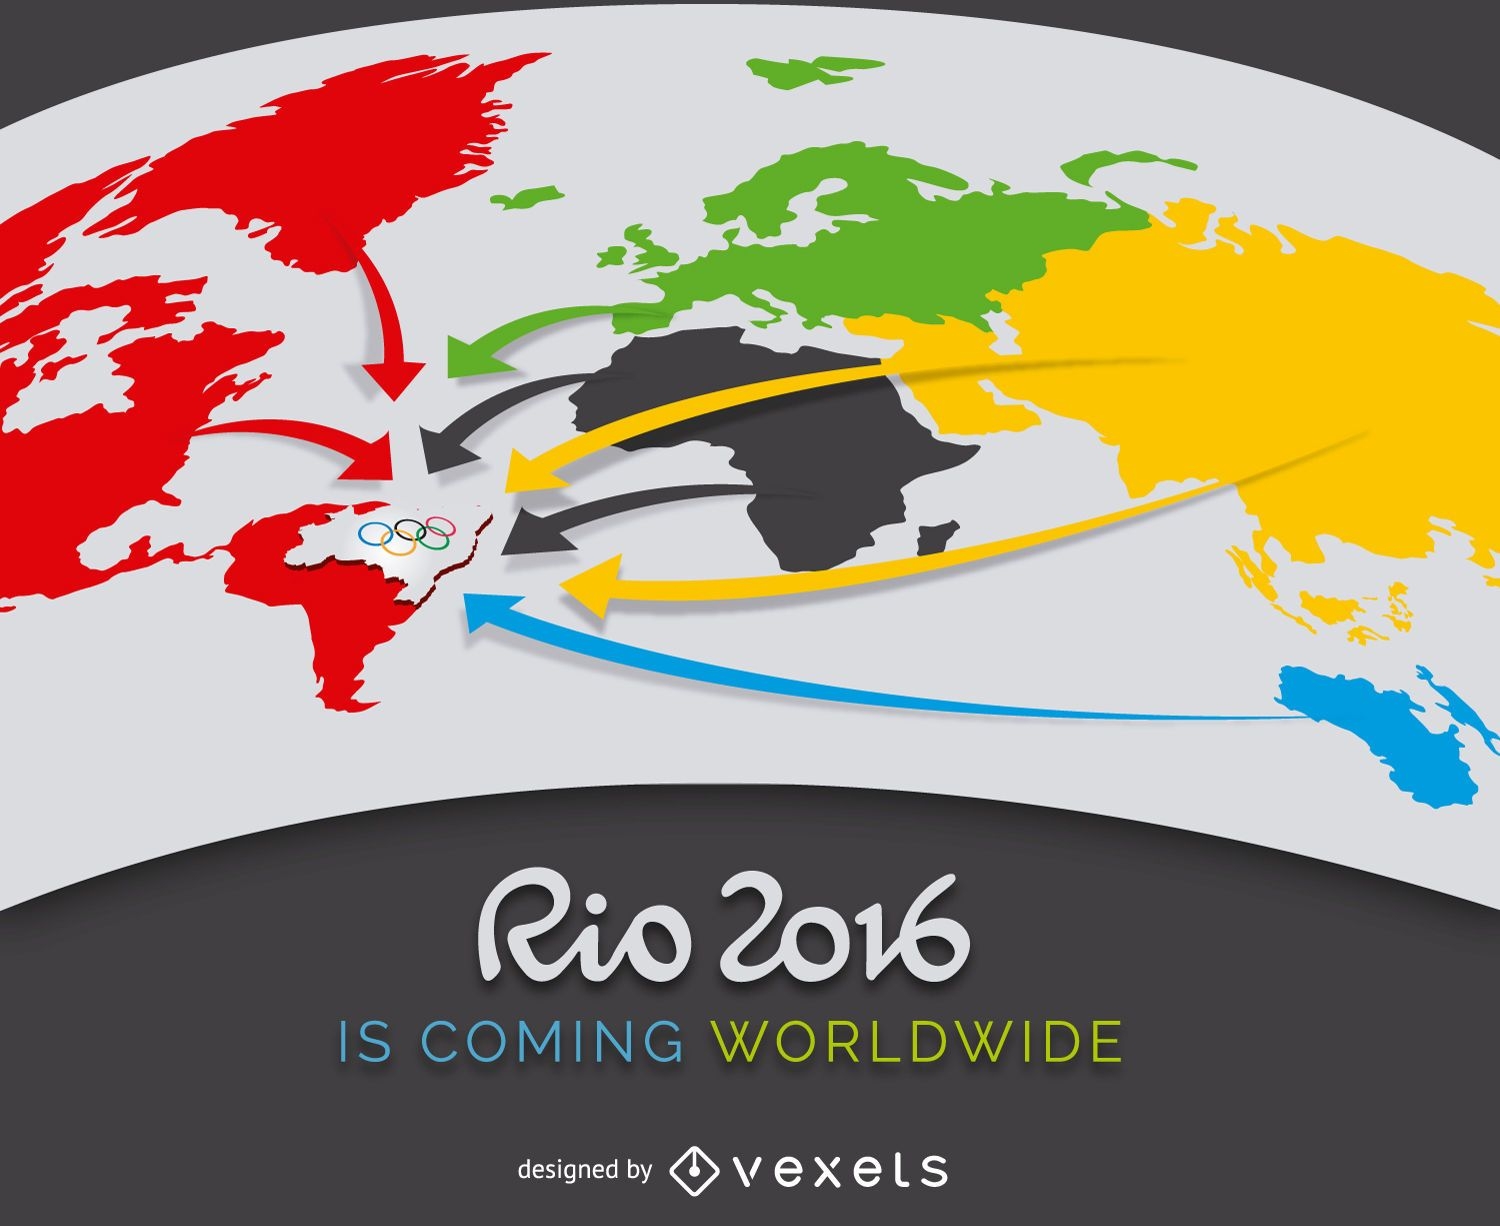 Rio 2016 advertising